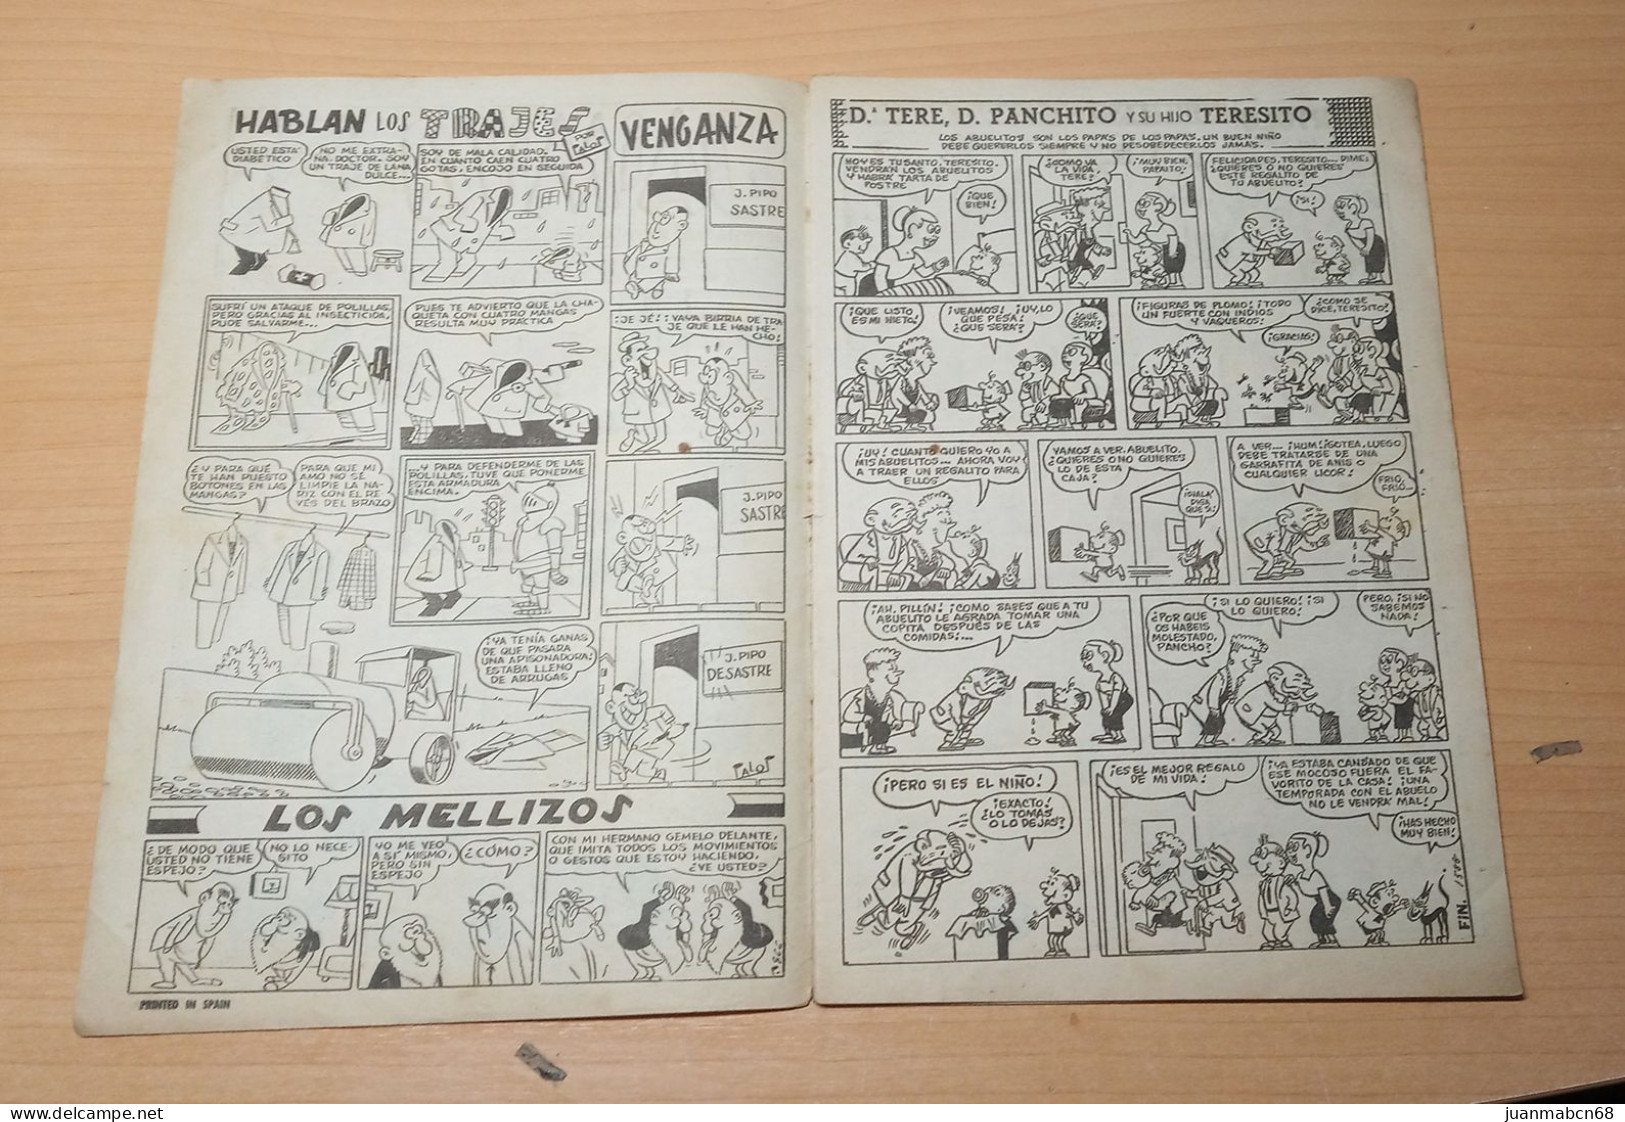 Comic Jaimito Nº506 (1958) - Cómics Antiguos